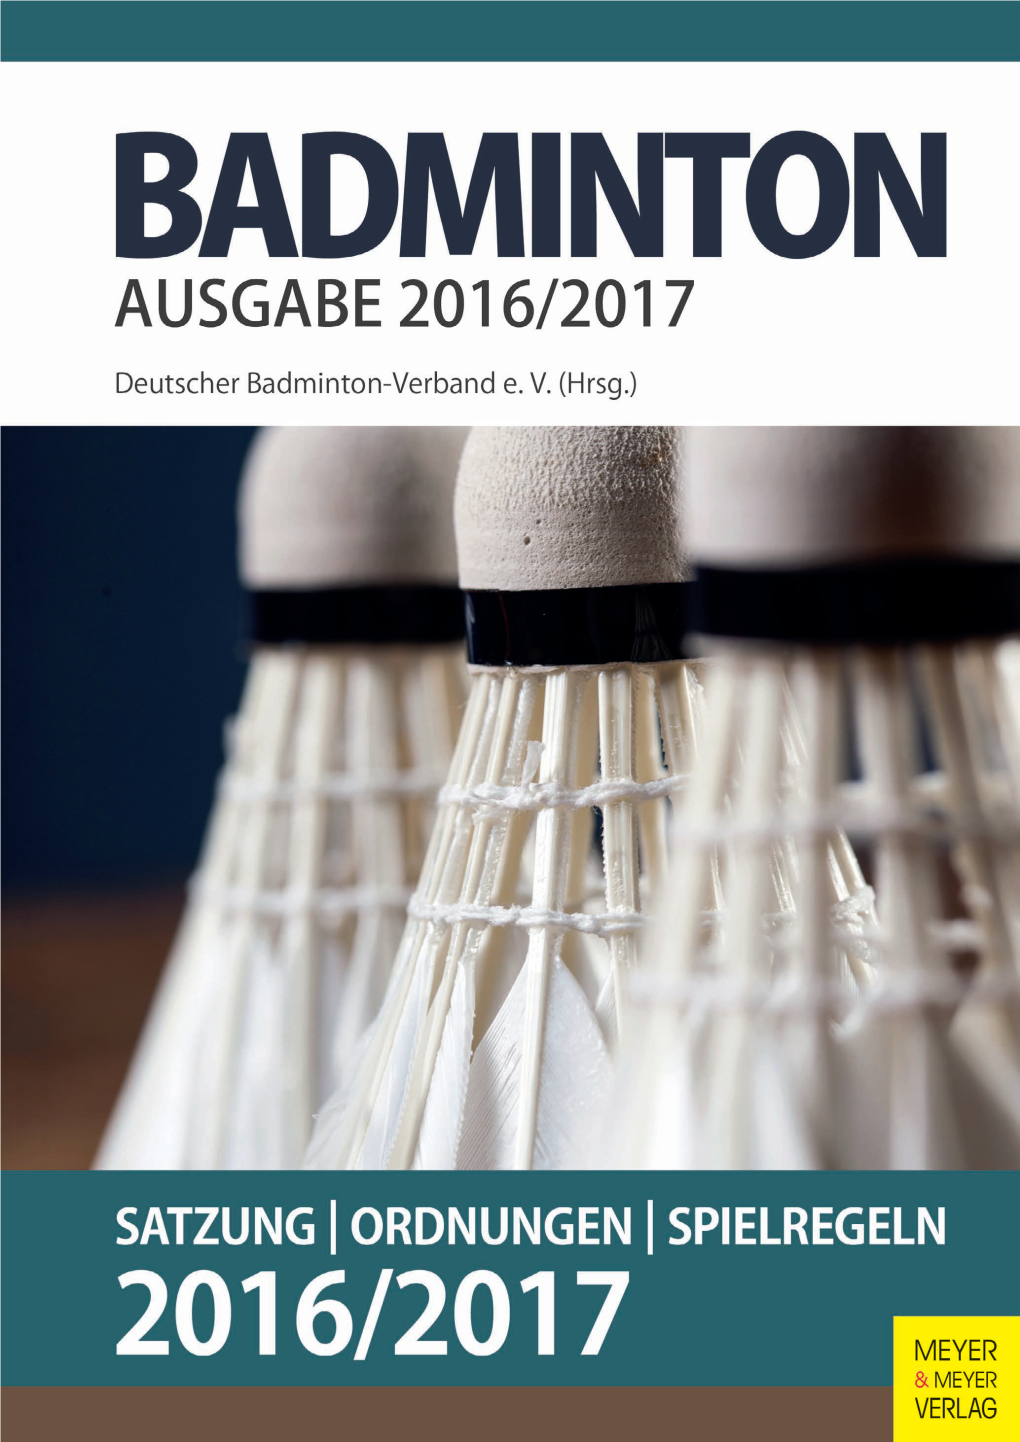 DBV Satzung – Ordnungen – Spielregeln 2016/2017 Badminton: Satzung – Ordnungen – Spielregeln 2016/2017